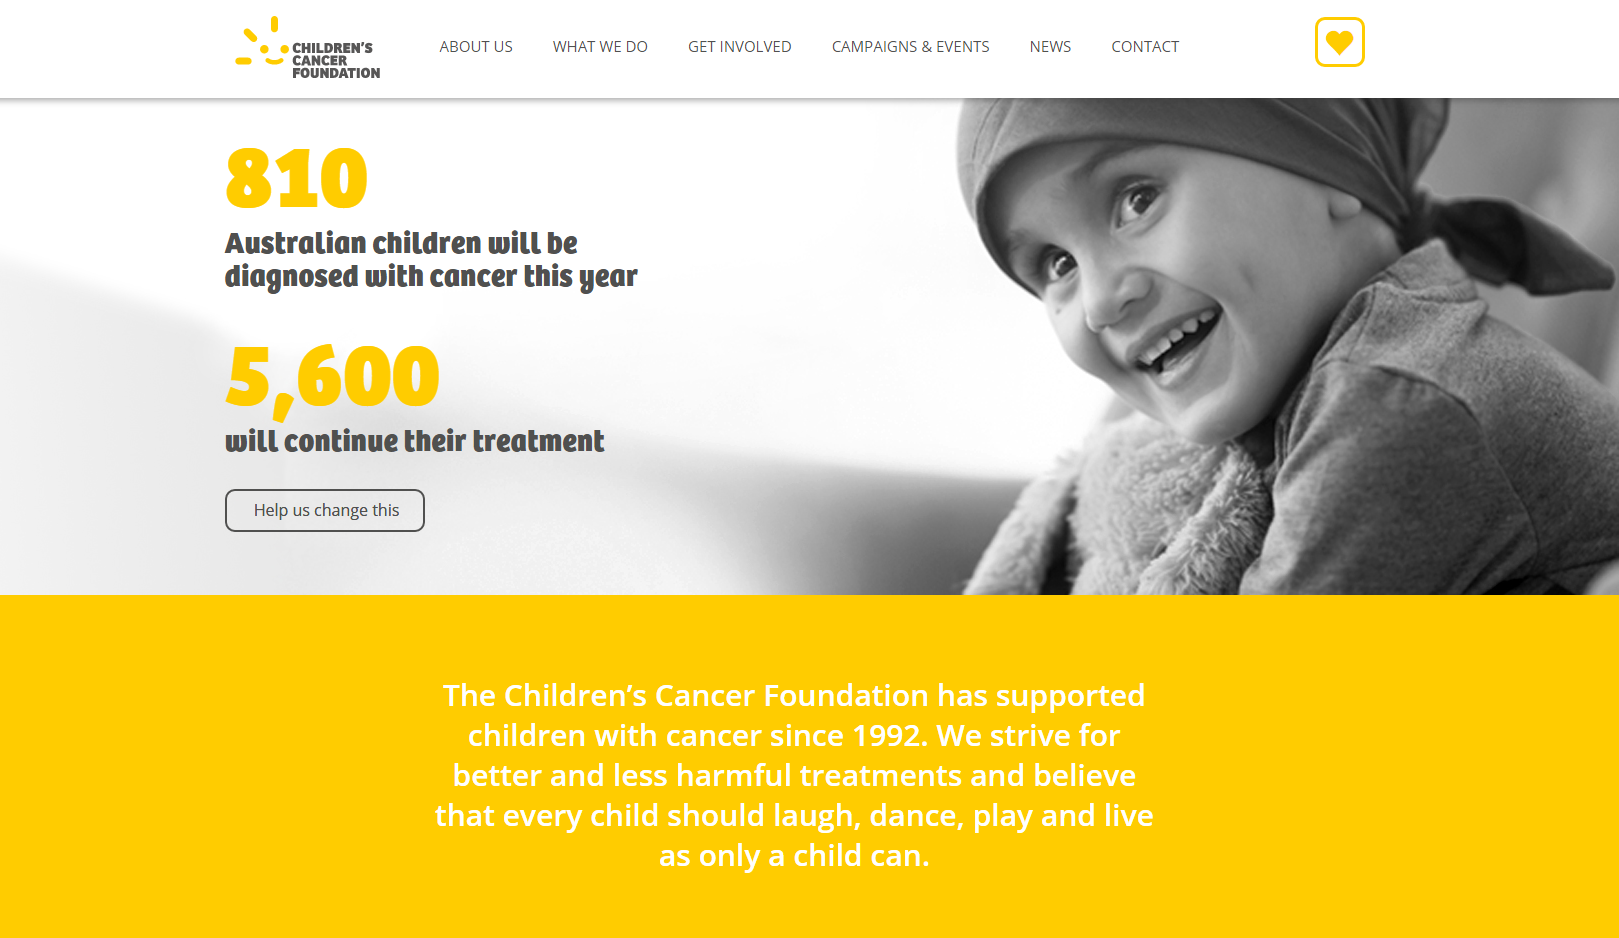 Children’s Cancer Foundation